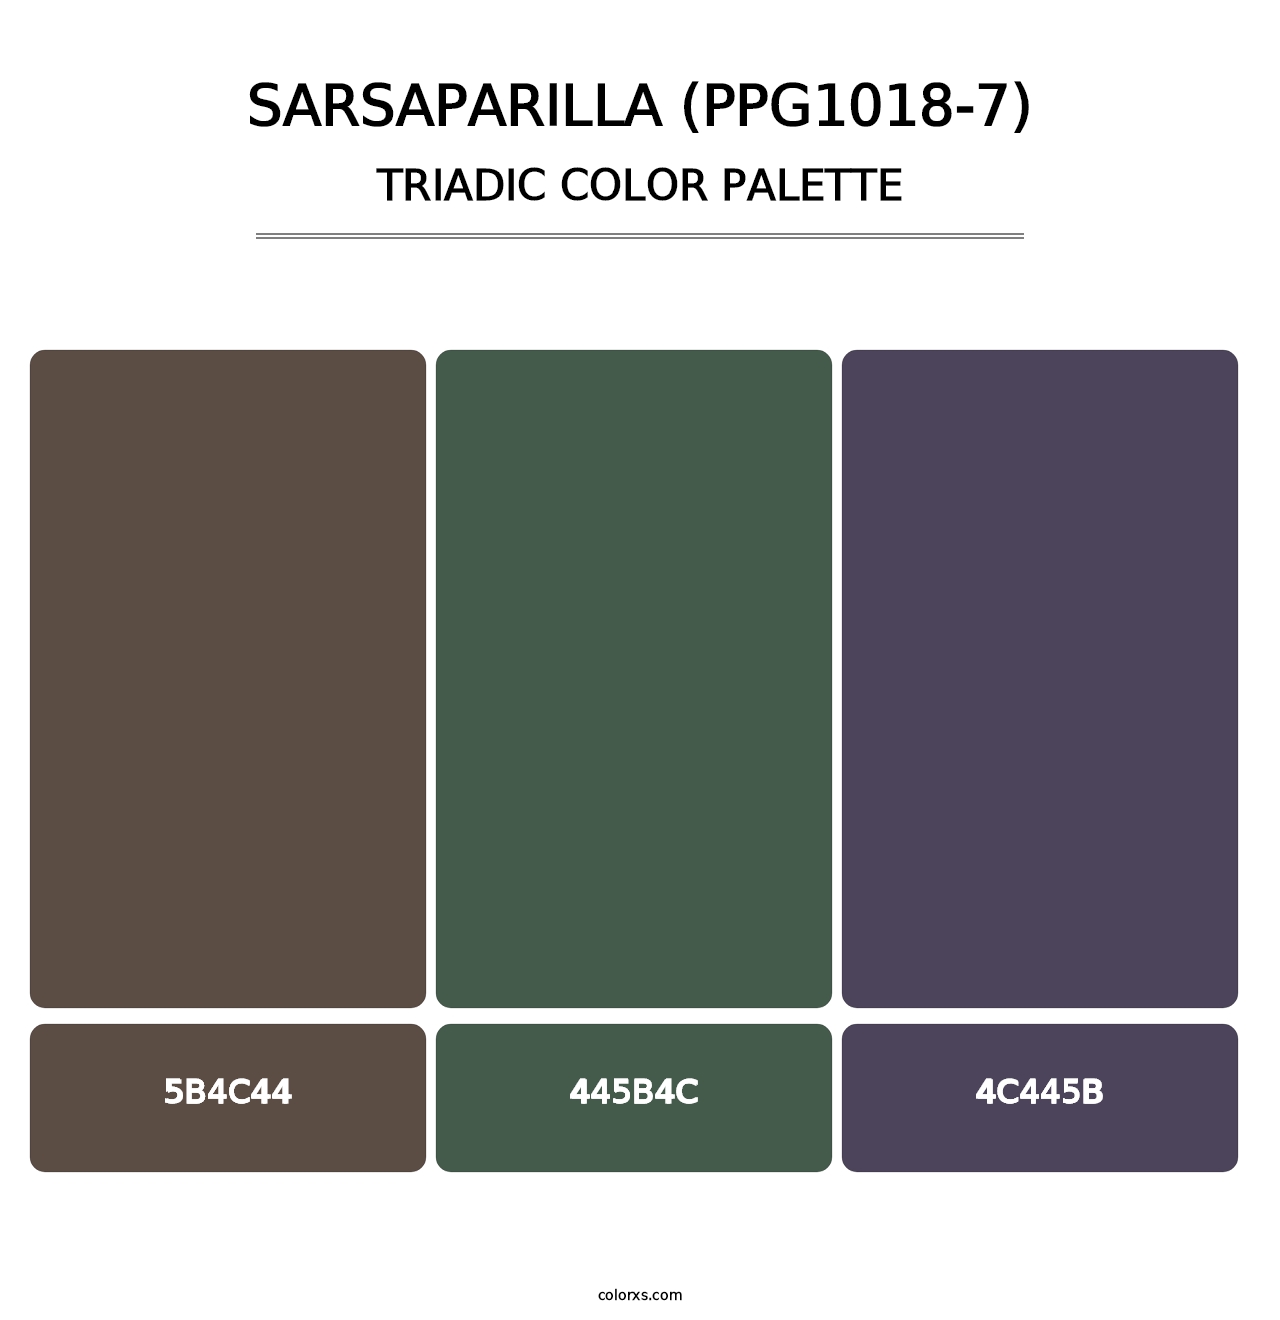 Sarsaparilla (PPG1018-7) - Triadic Color Palette